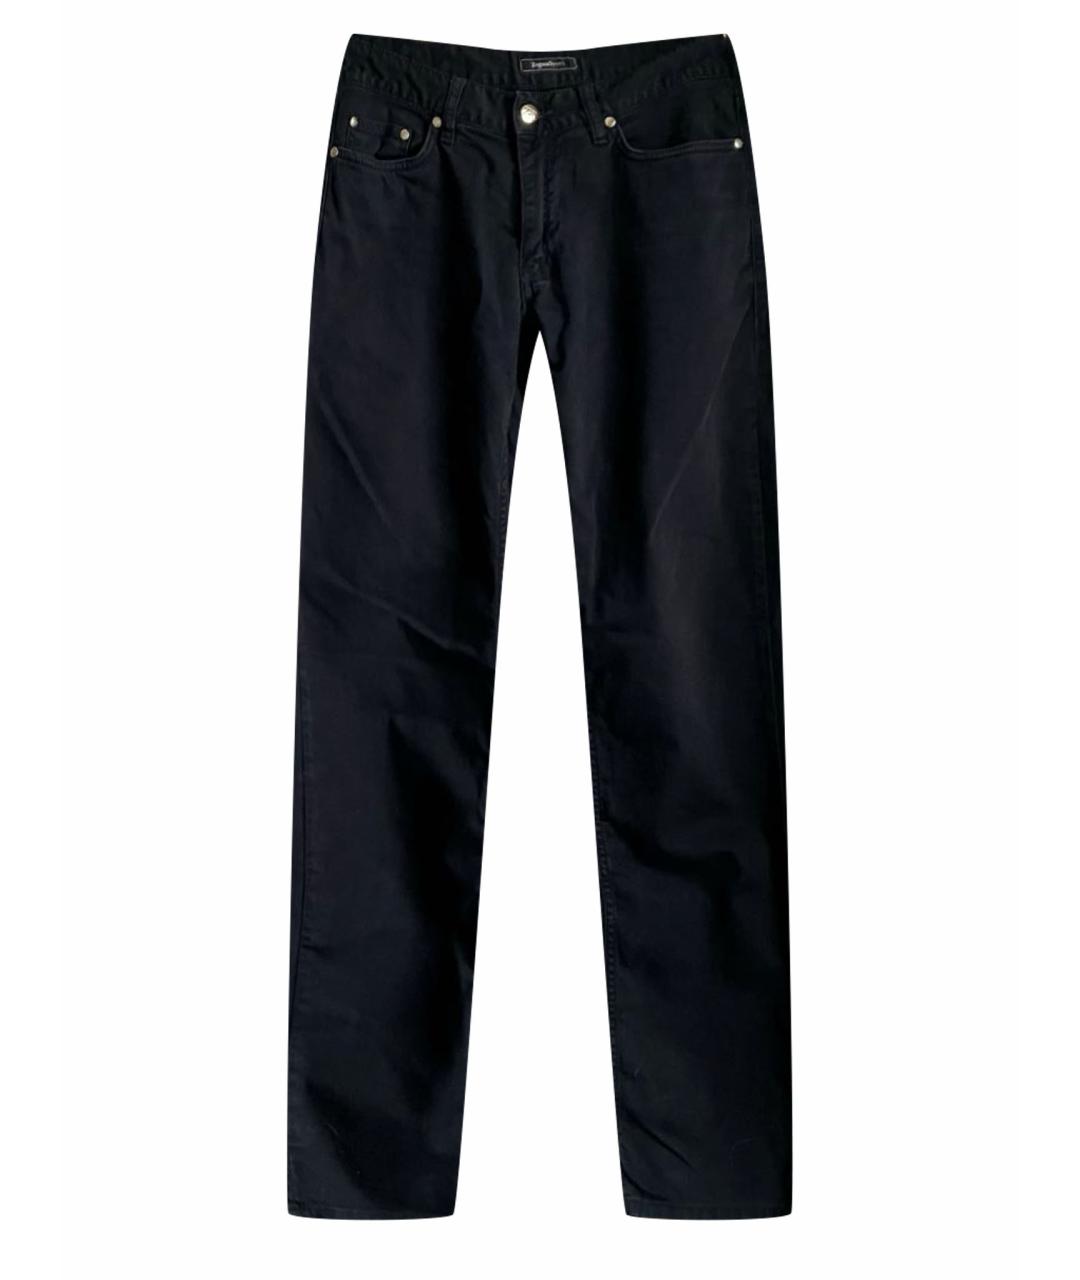 ZEGNA SPORT Темно-синие хлопковые джинсы скинни, фото 1